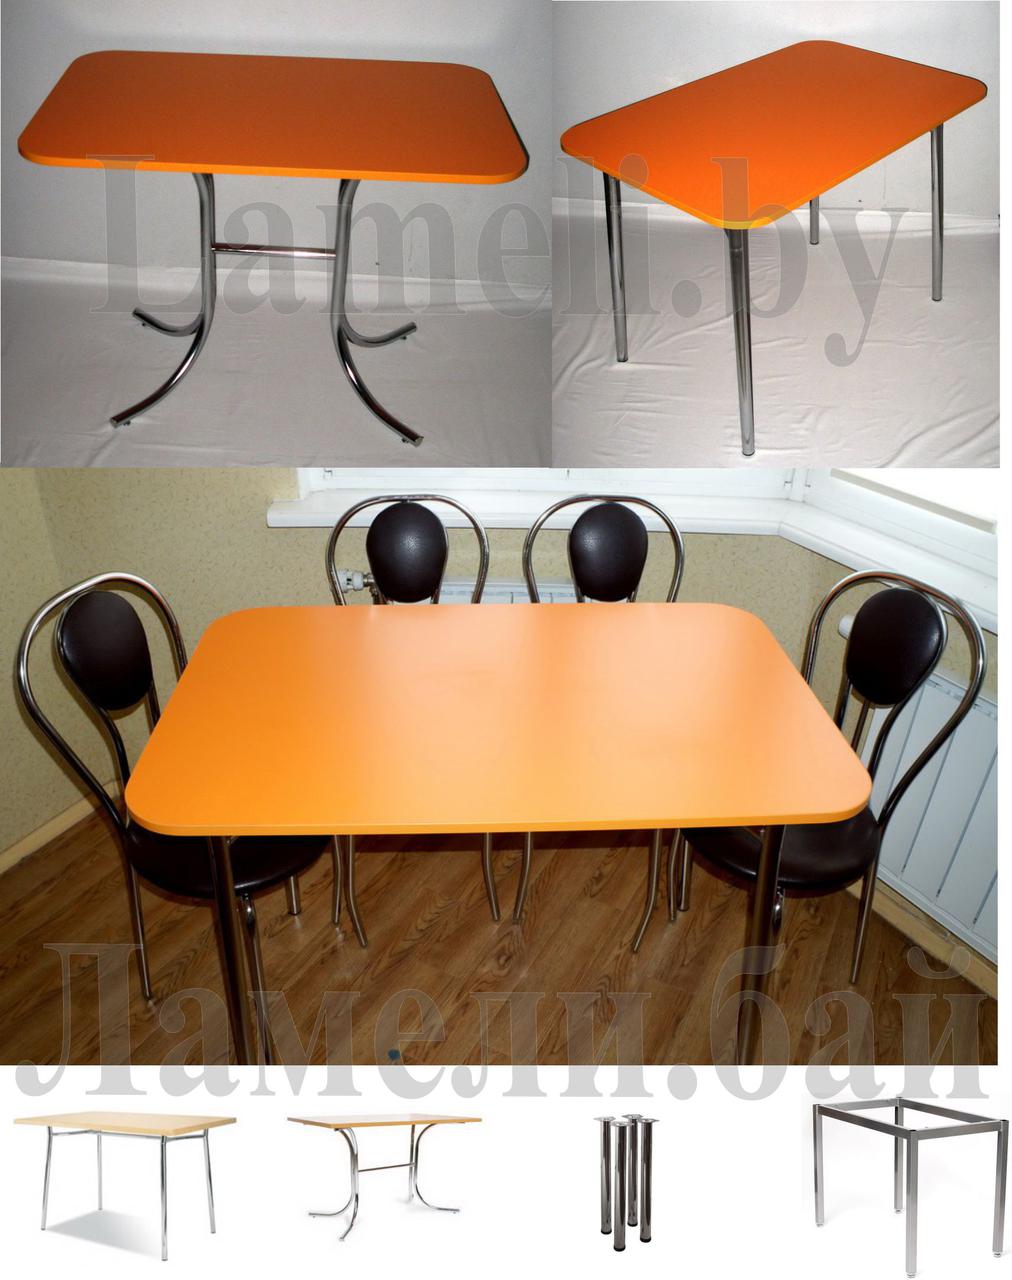 Стол со скосом цвета Оранжевый на 4 видах ног. Любые размеры! Доставка по Беларуси, фото 1